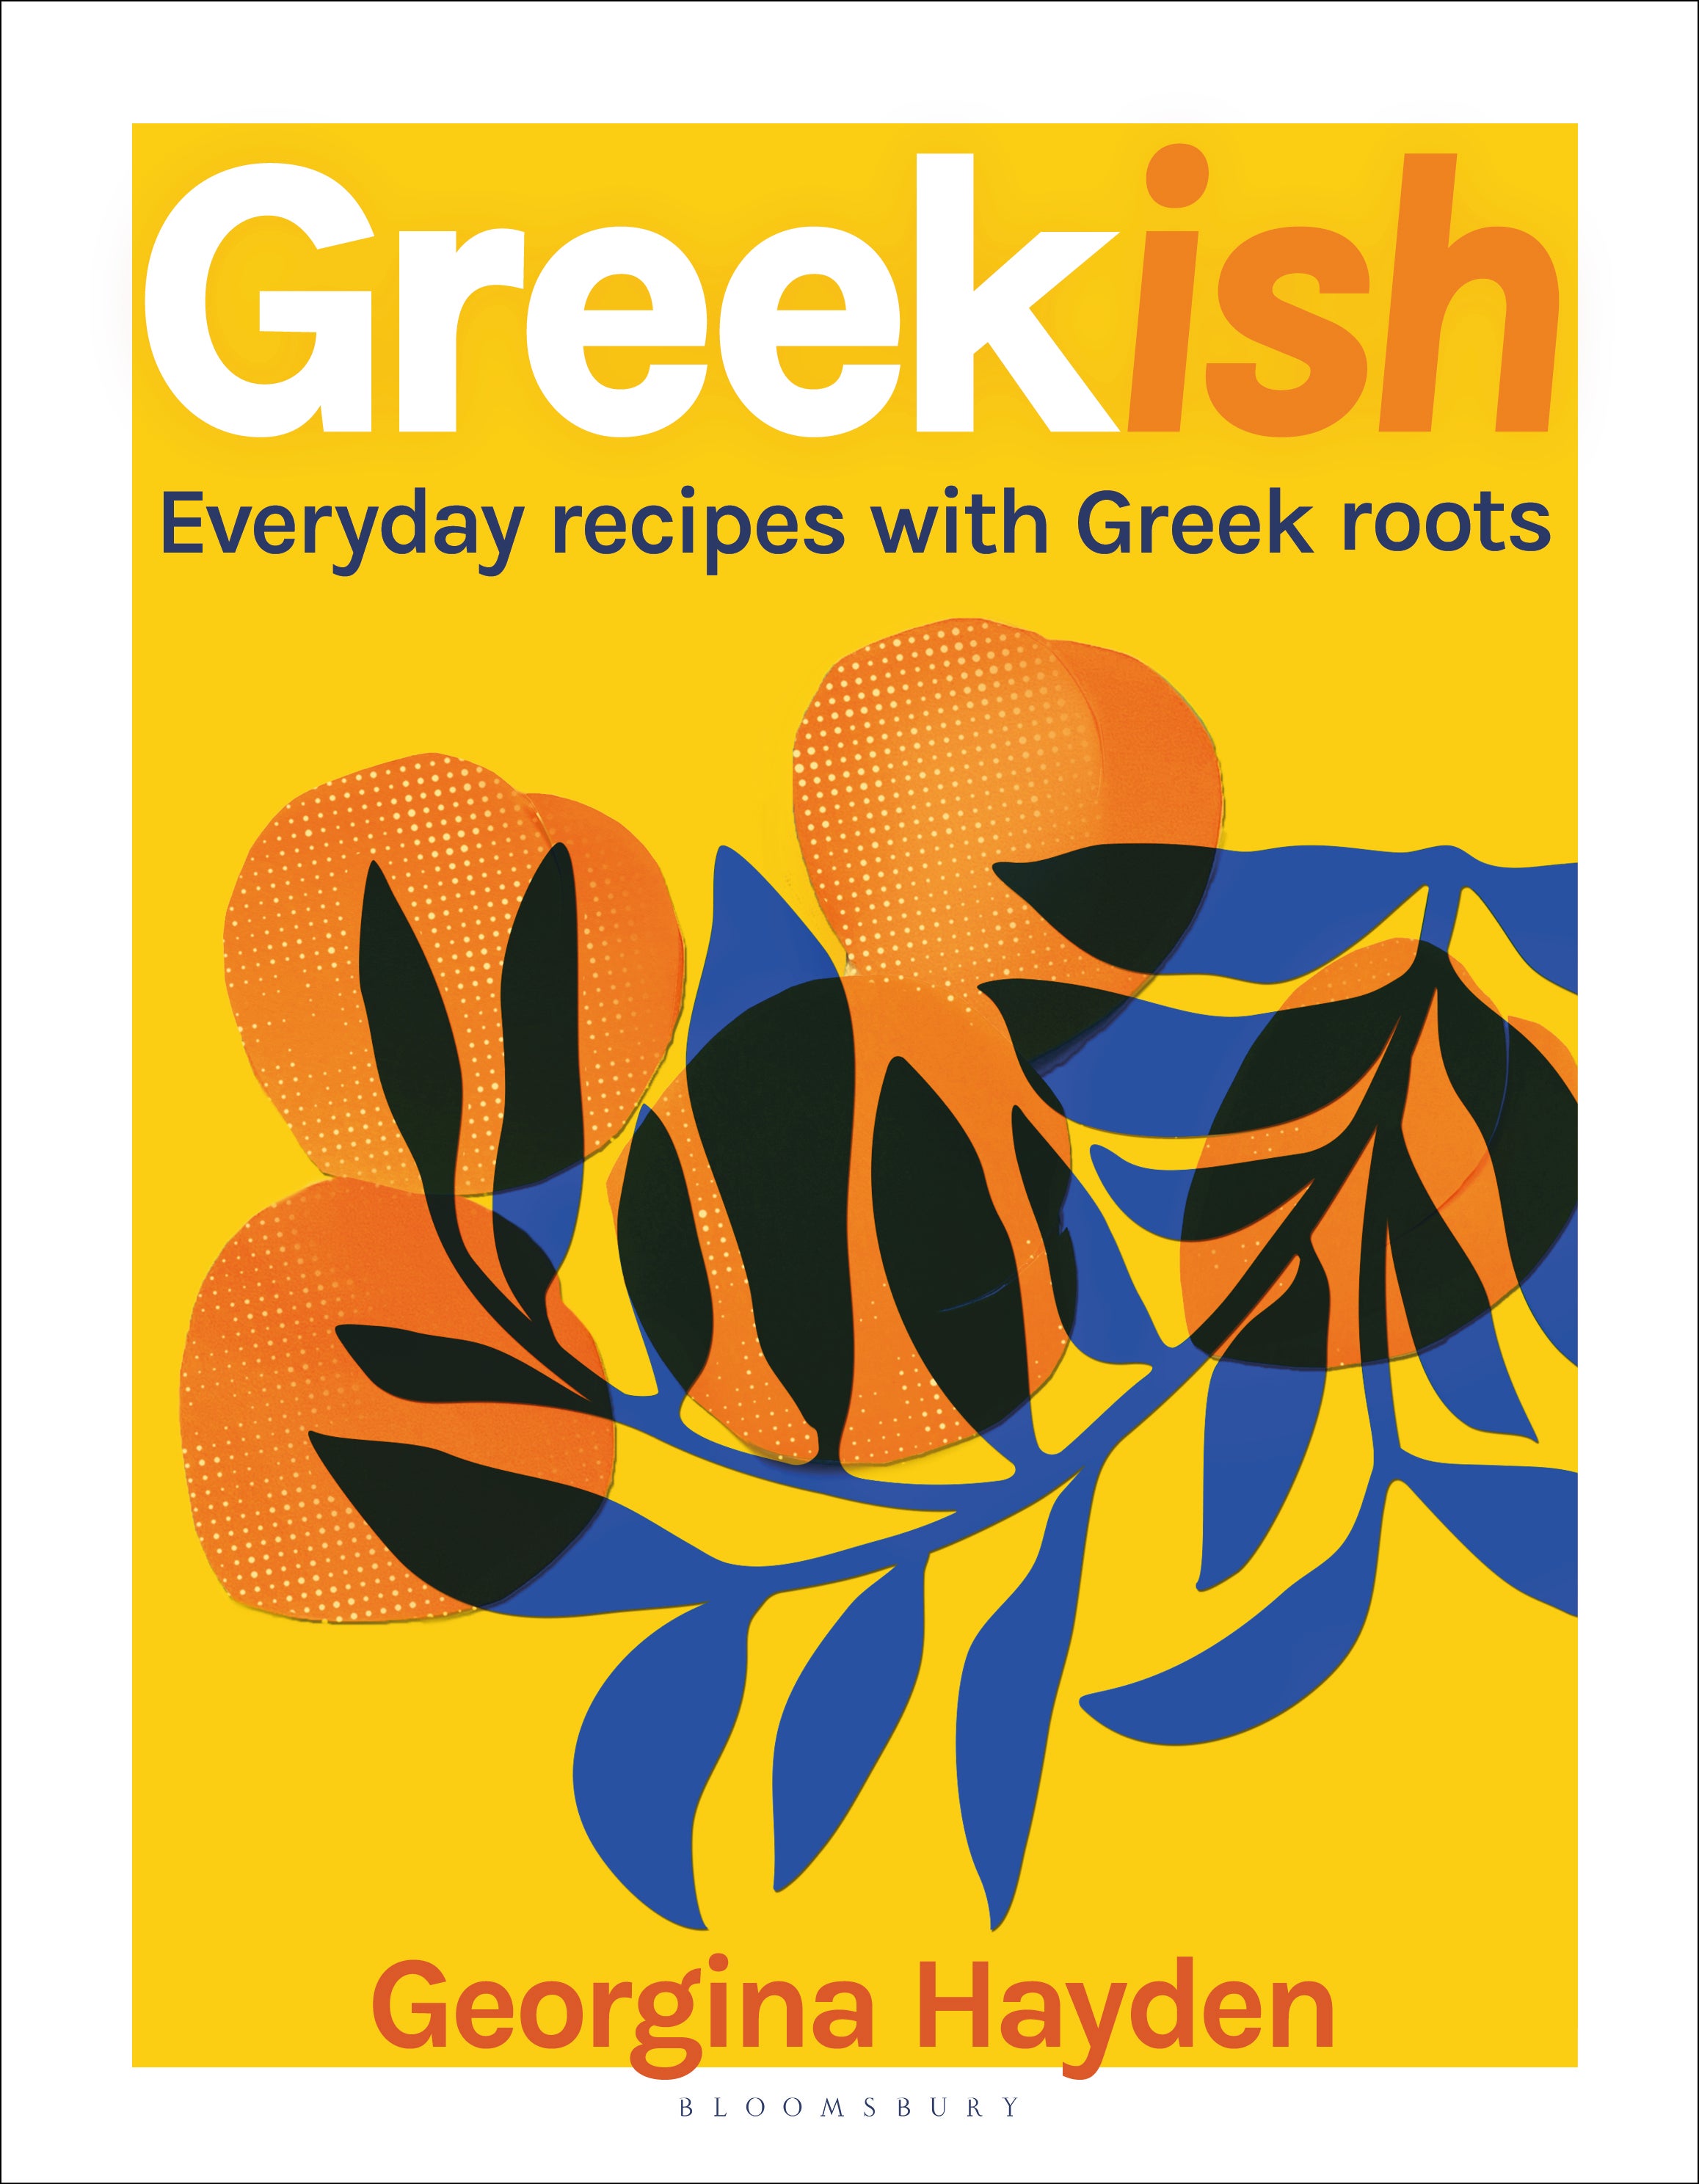 For Hayden, ‘Greekish’ is the best way to describe her food